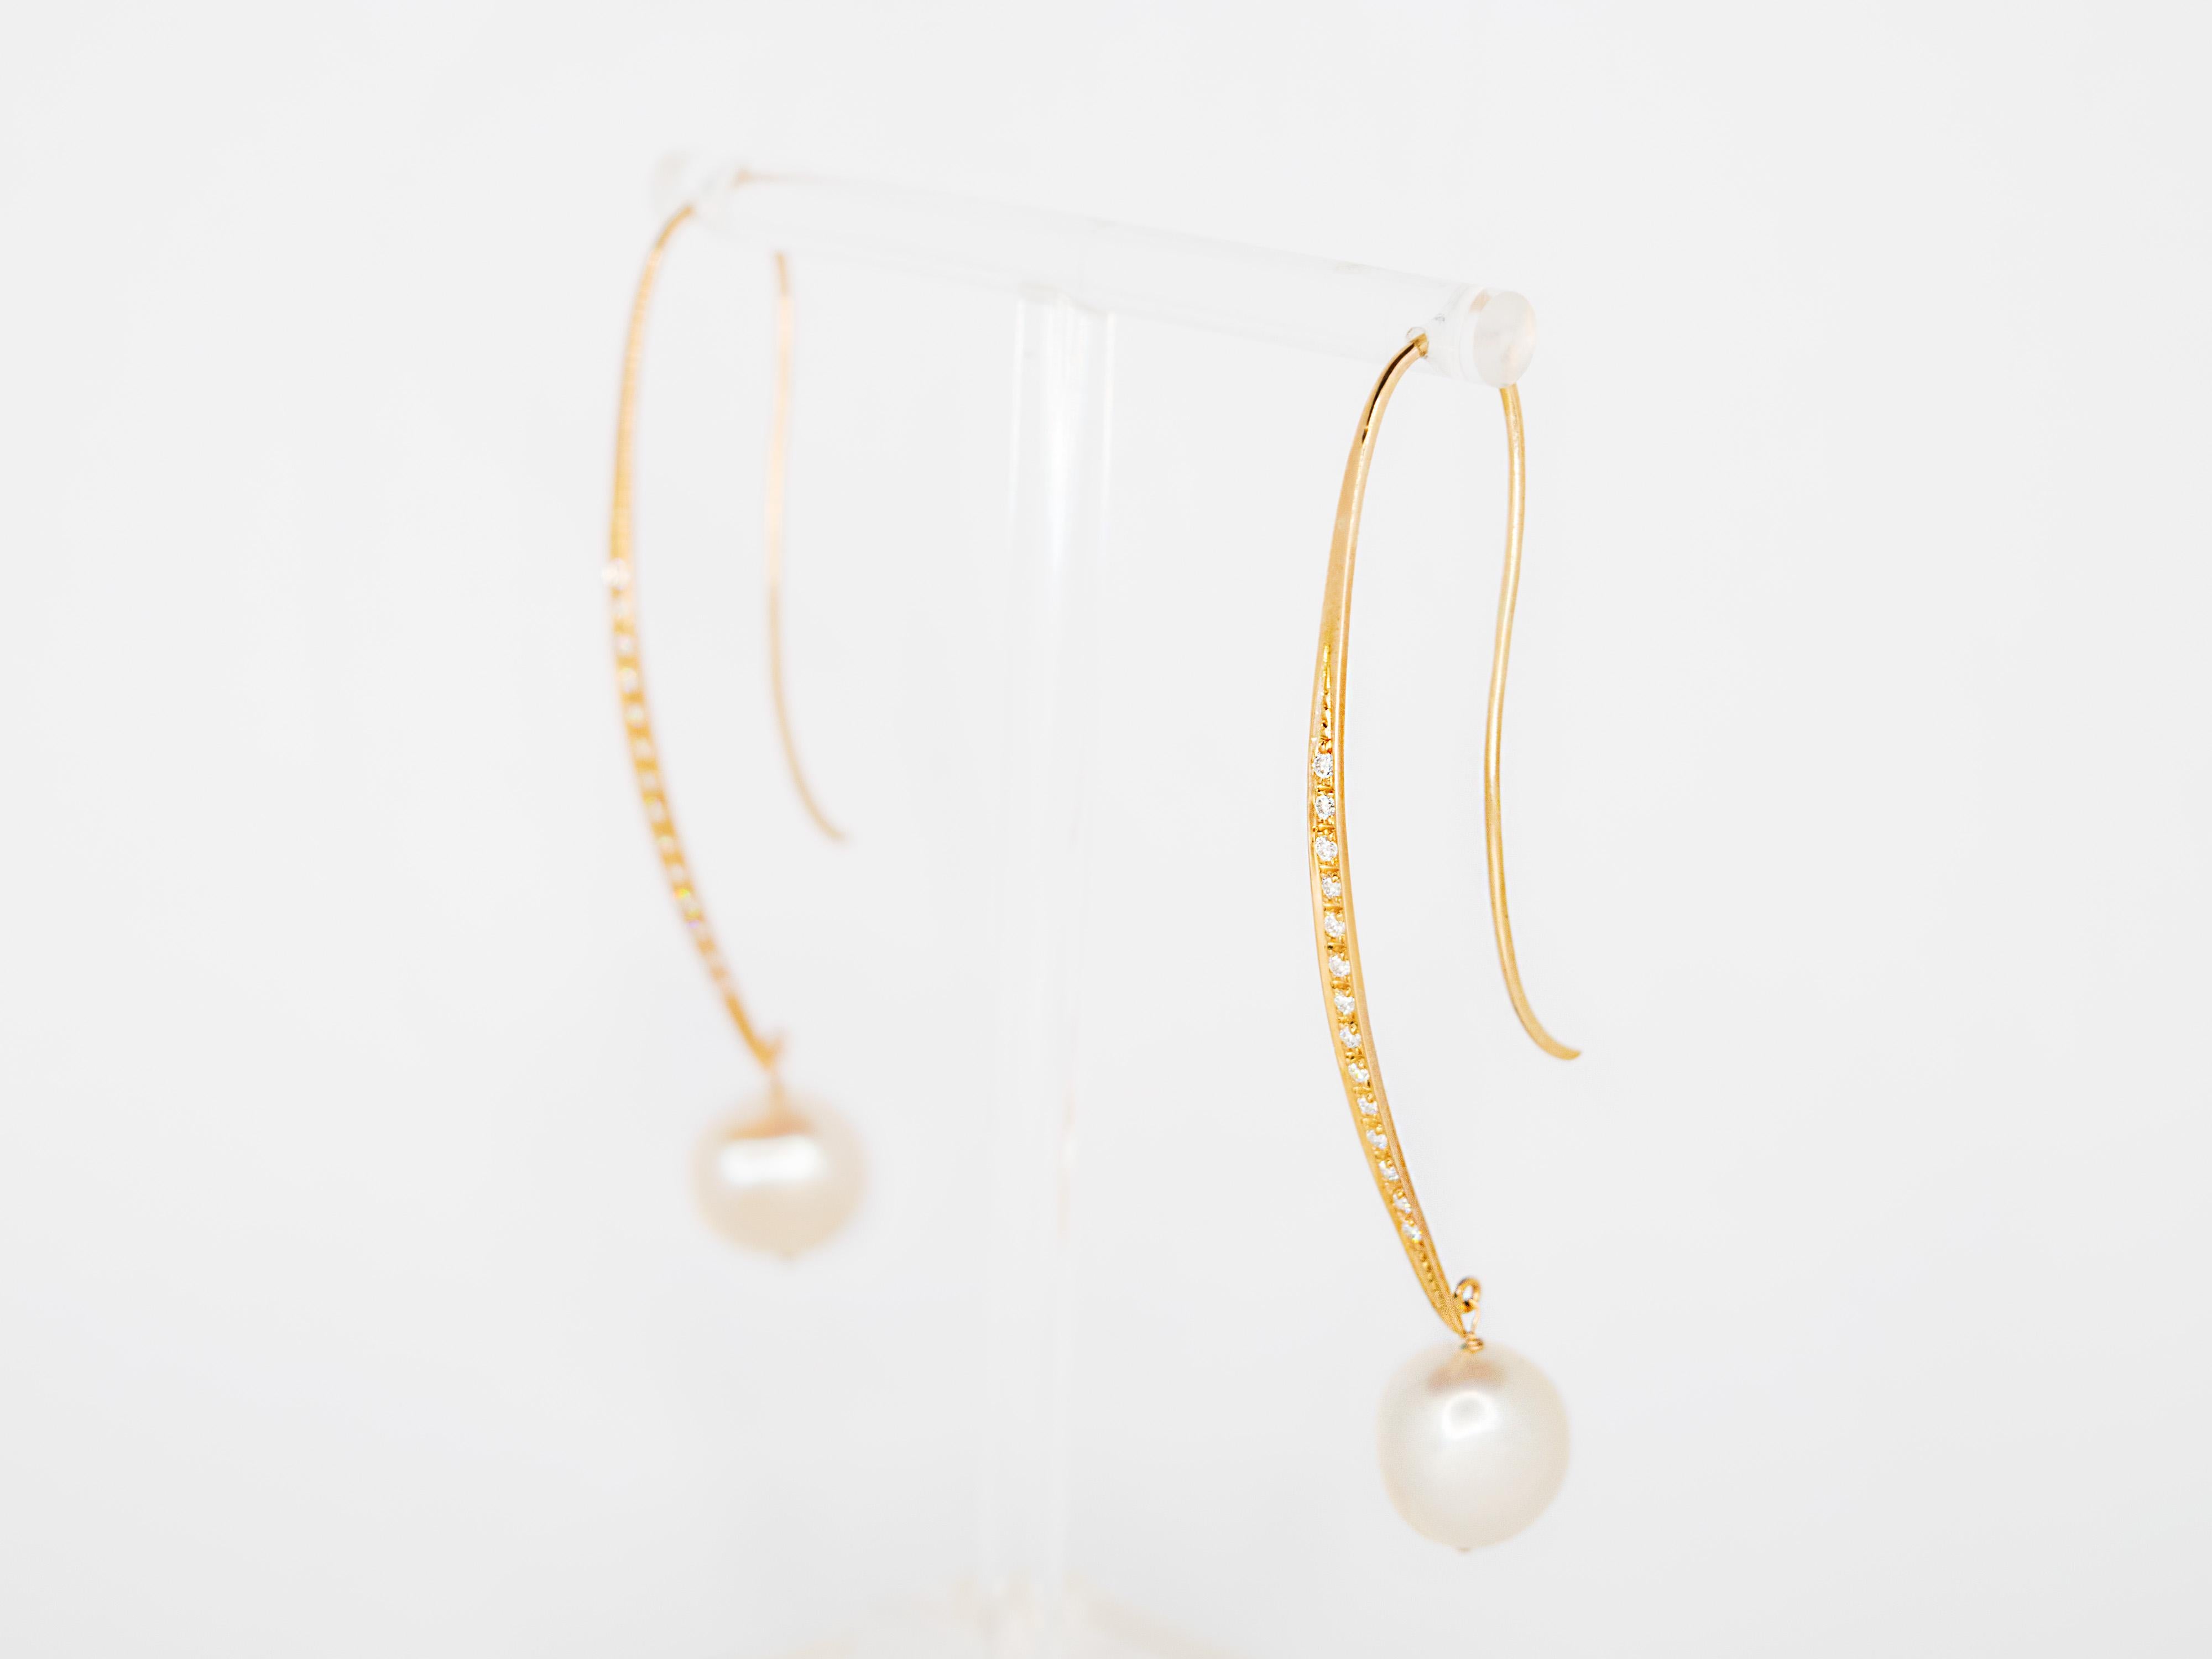 Ein elegantes Paar Ohrringe aus 18 Kt Roségold, besetzt mit Diamanten im Brillantschliff und unregelmäßig geformten Perlen
Diese Ohrringe haben ein Gesamtgewicht von 7,1 g und eine Gesamtlänge von 6,8.
Die Perlen haben einen Durchmesser von 1,2